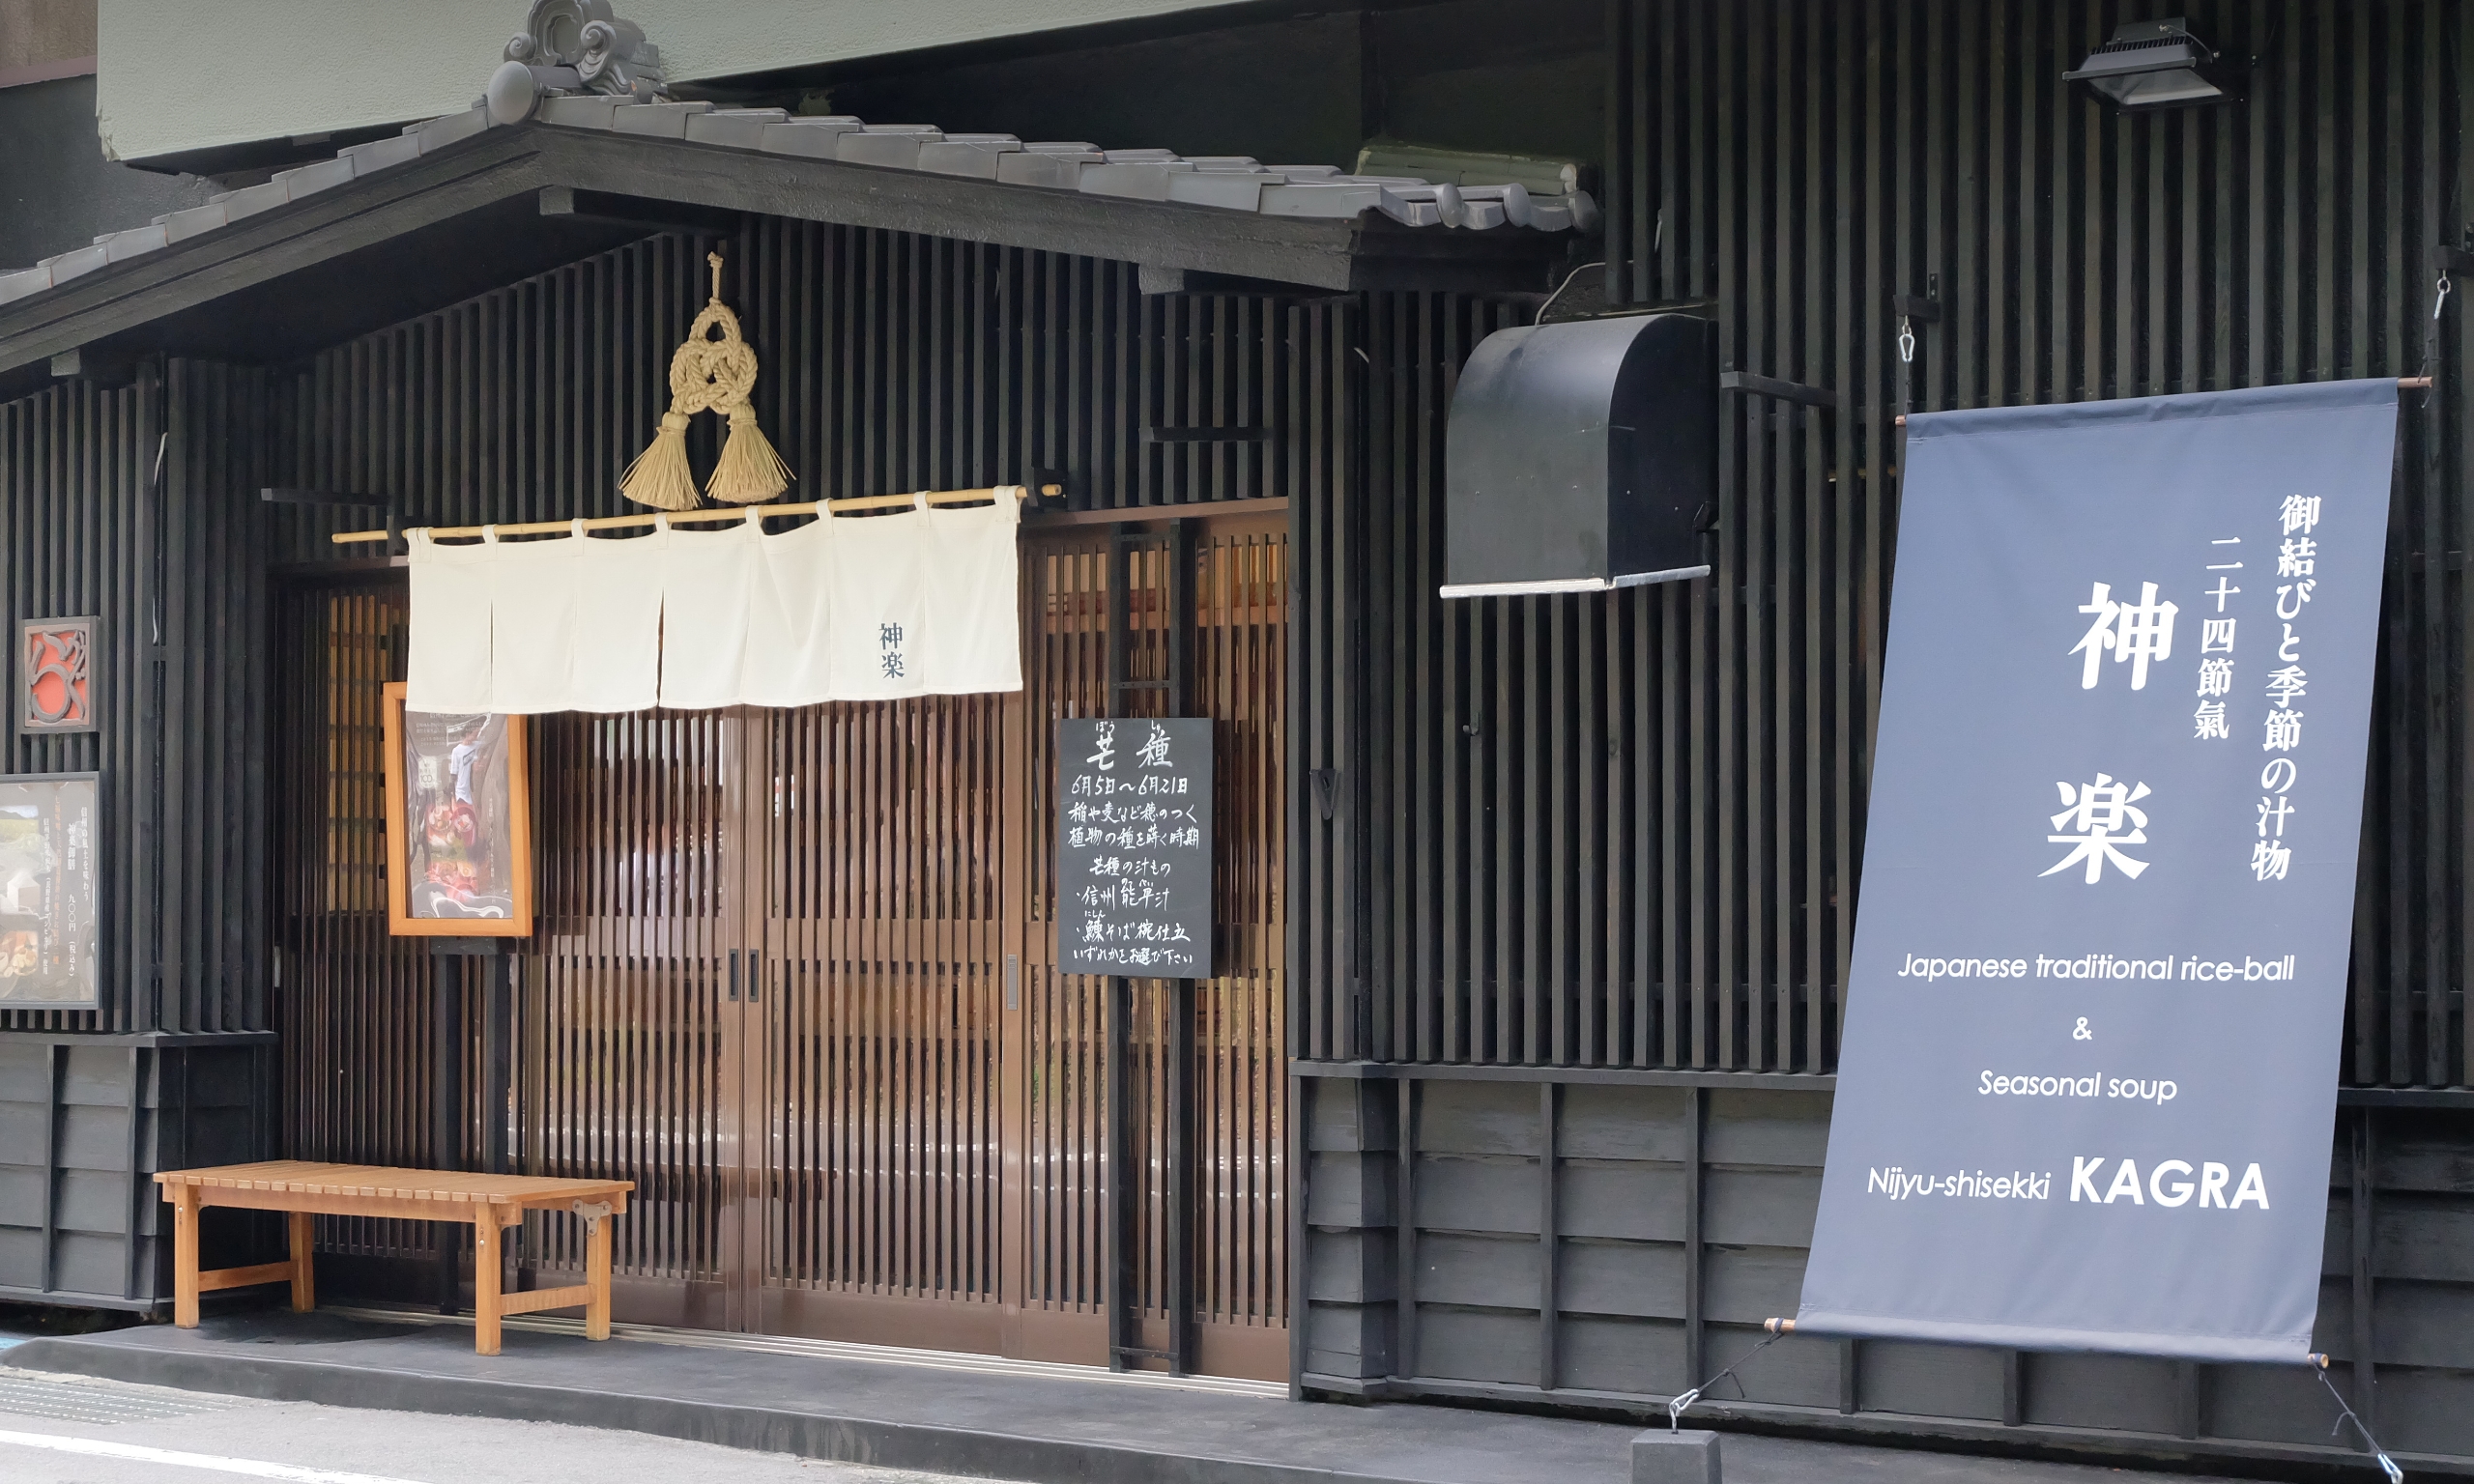 神楽は御柱祭で名高い諏訪大社、下社秋宮の門前に店を構えています